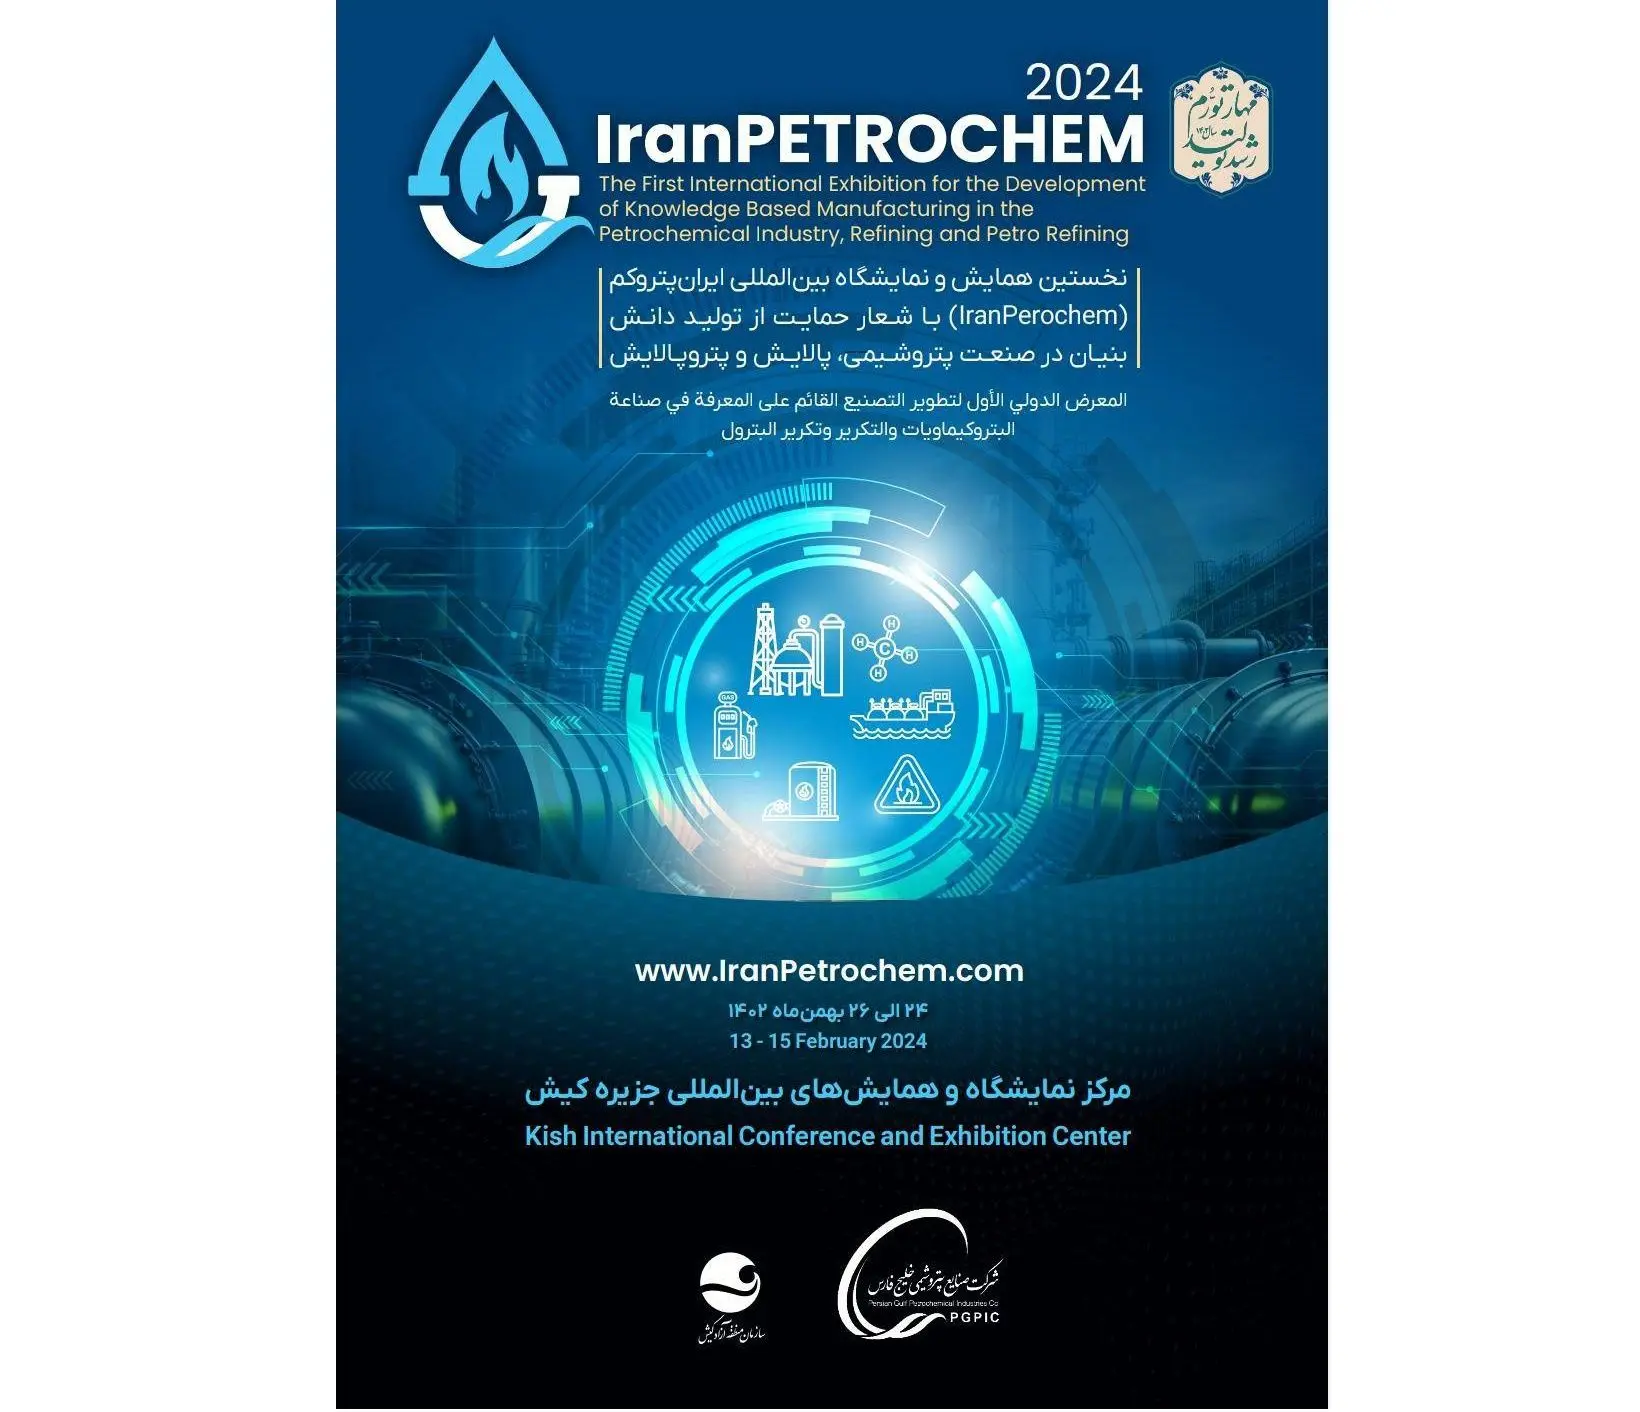 اولین همایش و نمایشگاه بین المللی ایران پتروکم ( IRAN PETROCEM ) با شعار حمایت از تولید دانش بنیان در صنعت پتروشیمی ، پالایش و پتروپالایش